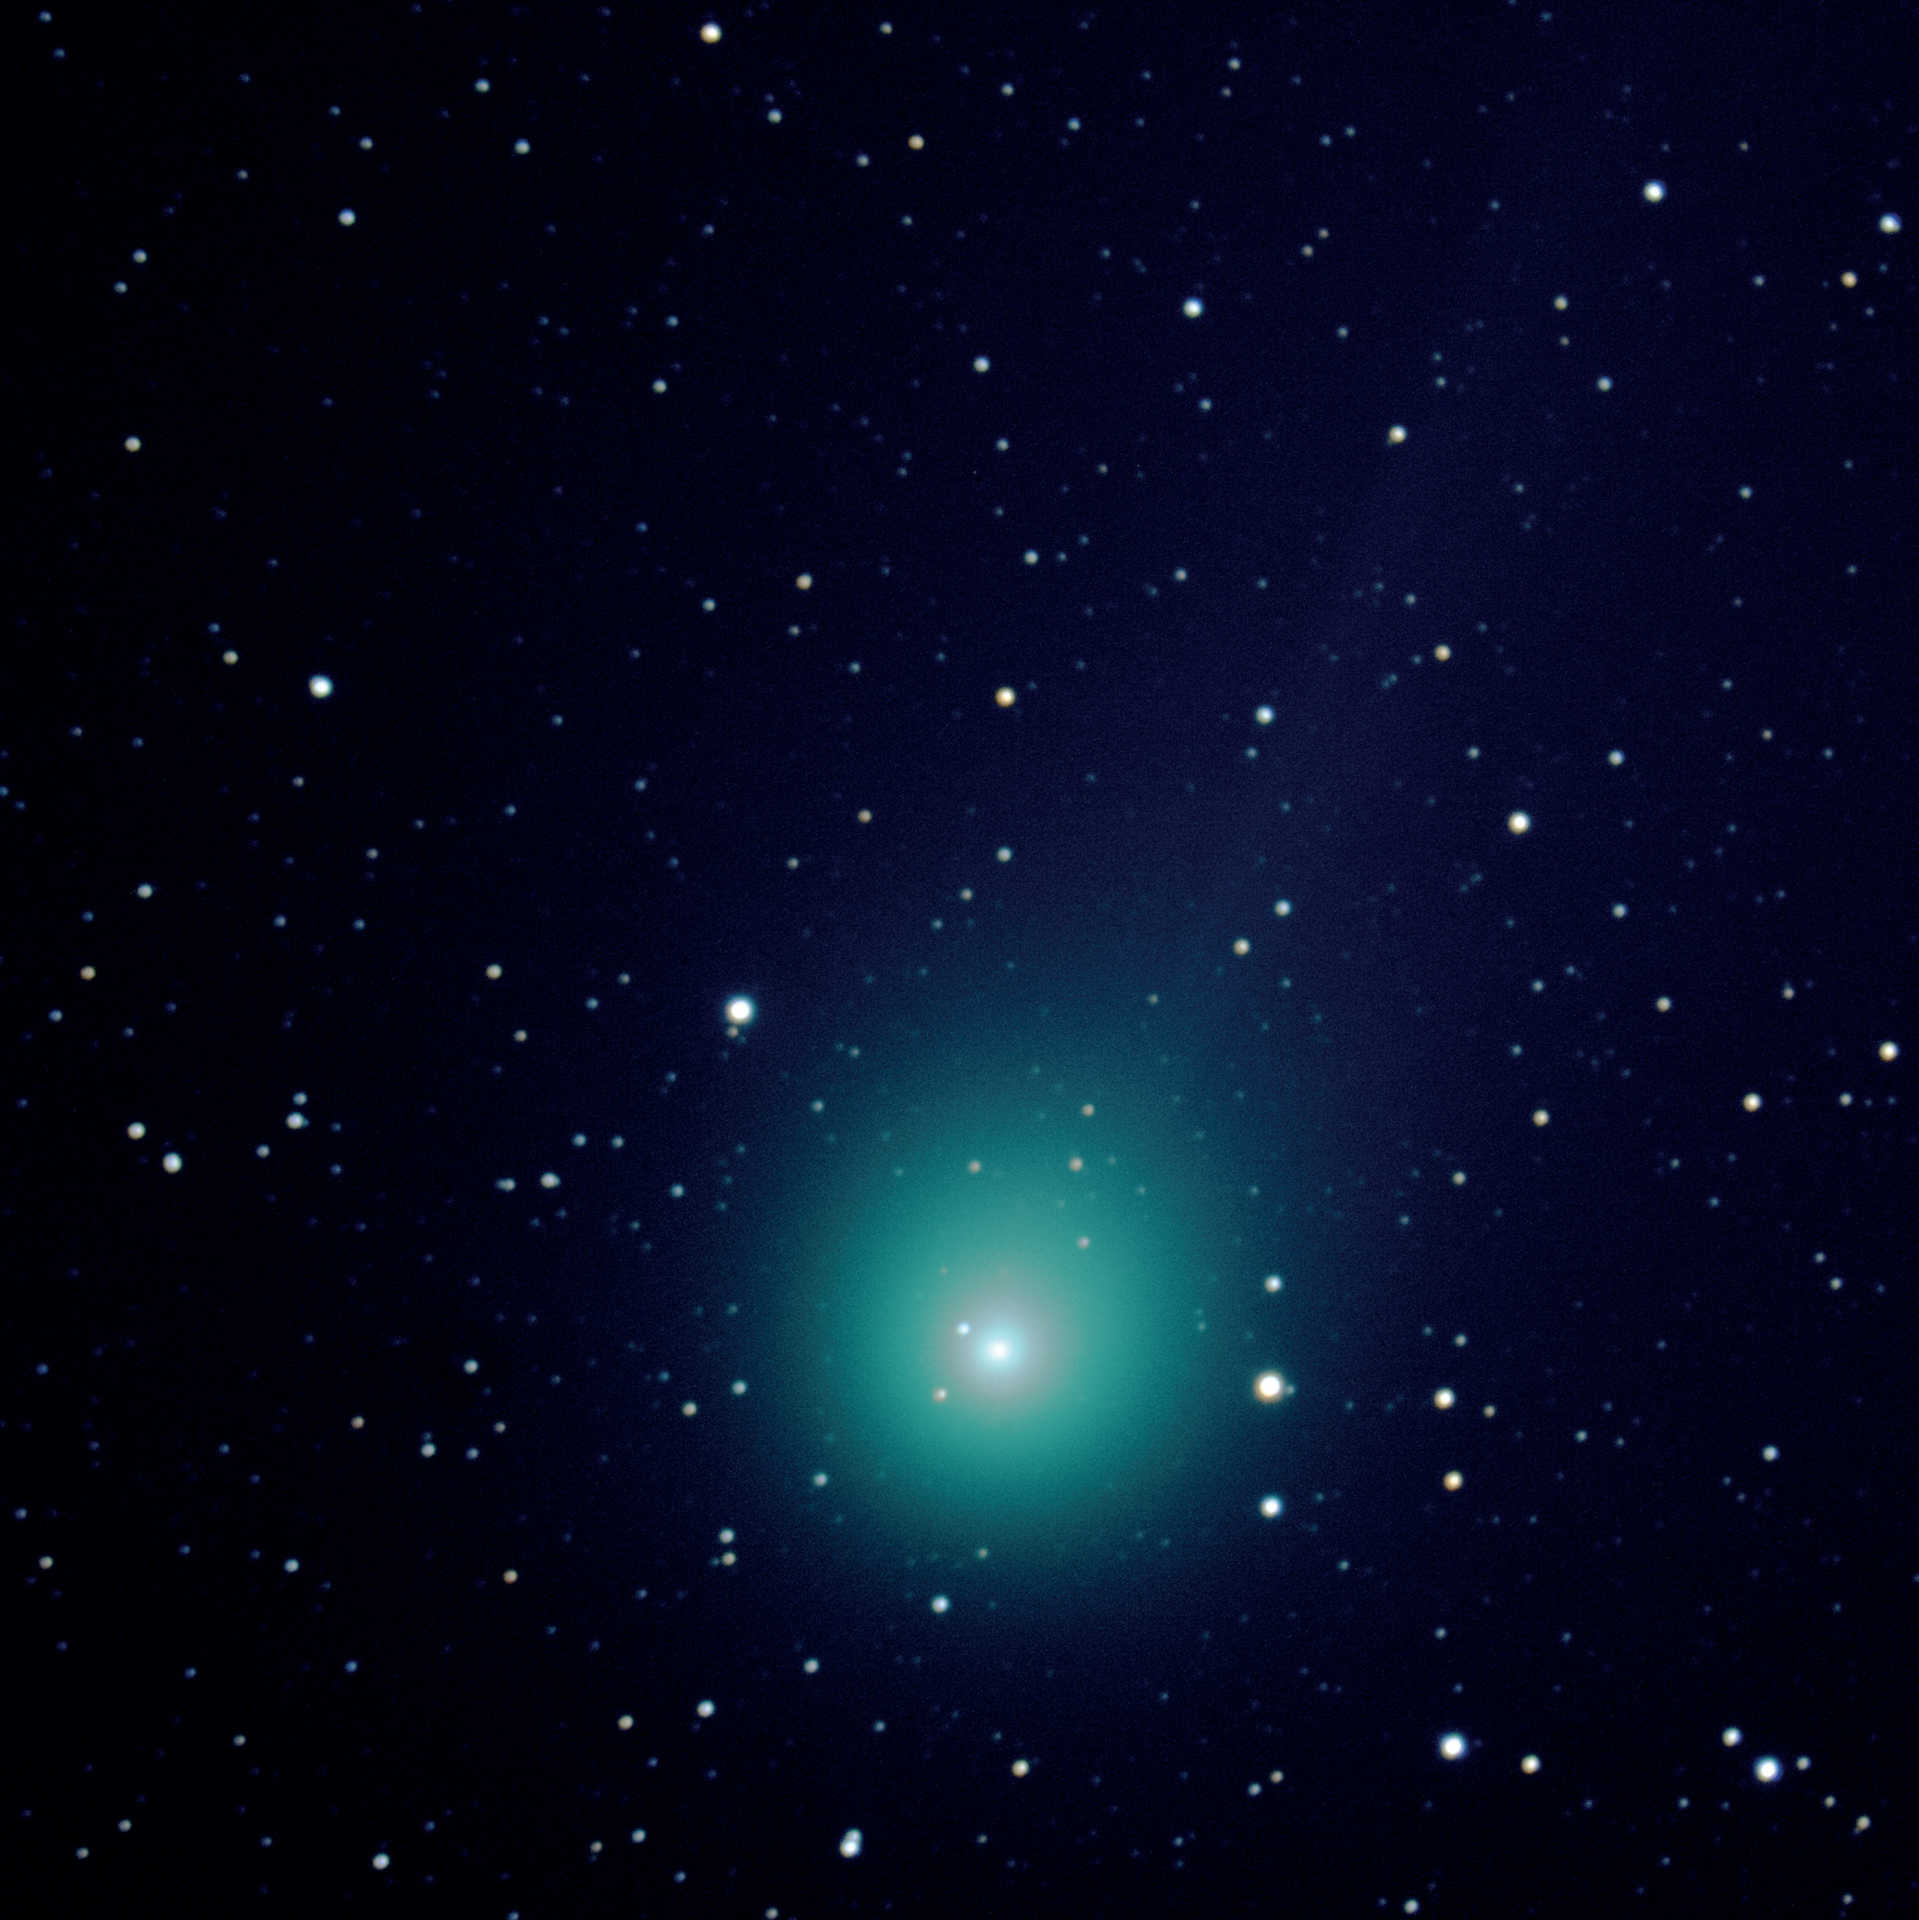 Cometa C/2014 Q2 (Lovejoy), privită printr-un telescop Schmidt-Cassegrain cu distanță focală mare. Imaginea compusă a fost realizată la data de 7 martie 2015, la câteva minute după Figura 3, cu un aparat de fotografiat Canon 550D DSLR montat pe un telescop cu o distanță focală de 2000 mm și o deschidere de 280 mm. Pentru a realiza această imagine compusă au fost combinate cinci fotografii cu un timp de expunere de 120 de secunde fiecare (timp total de expunere: 10 minute), folosind cu DeepSkyStacker și Photoshop. U. Dittler